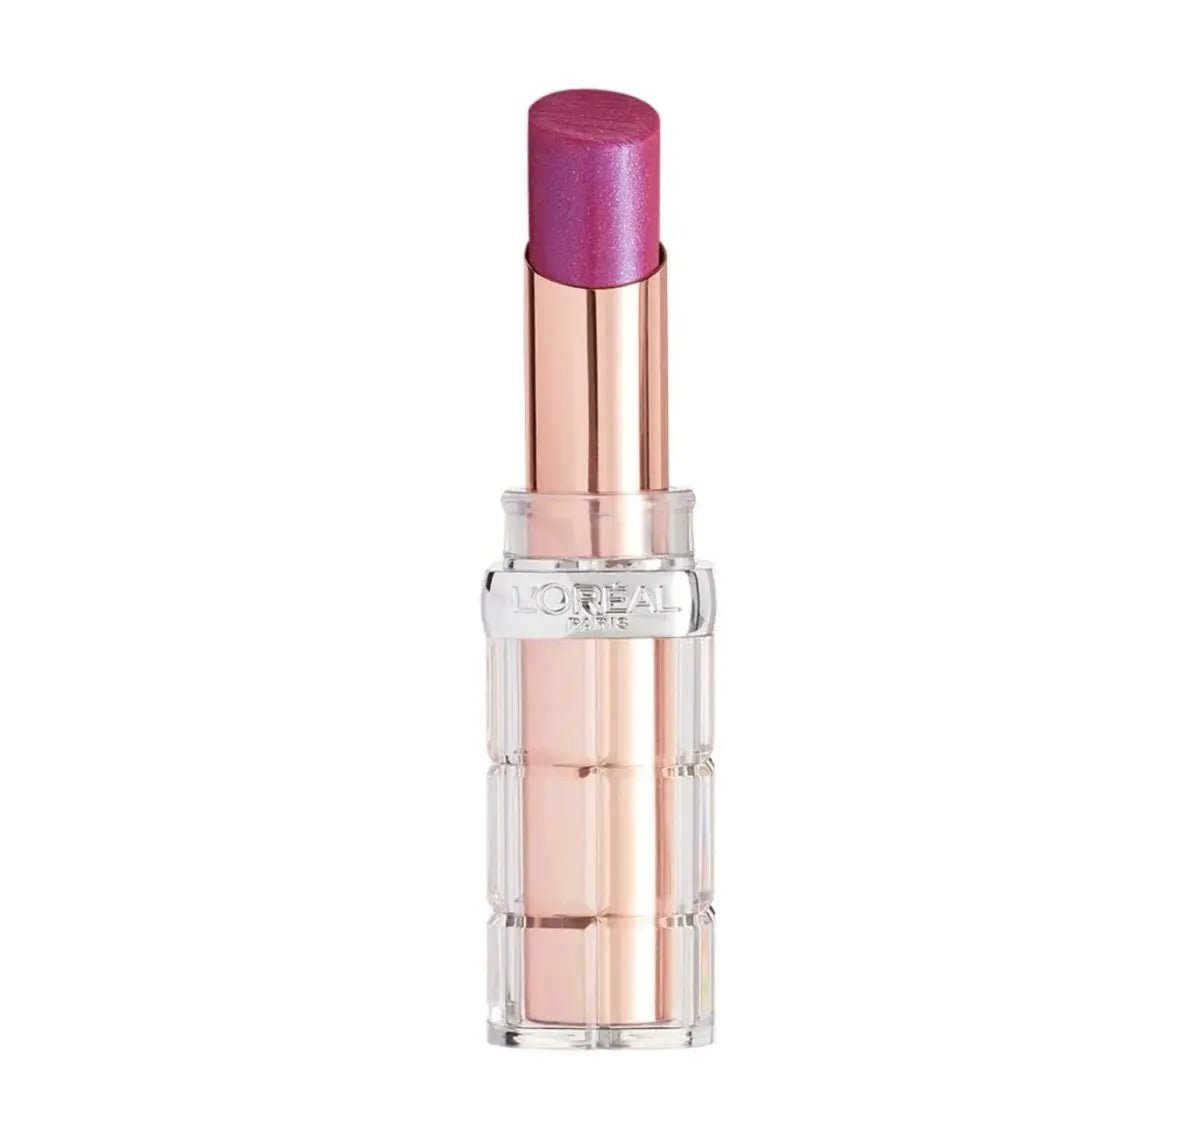 Image of L'Oreal Color Riche Shine Lipstick - Mulberry Plump